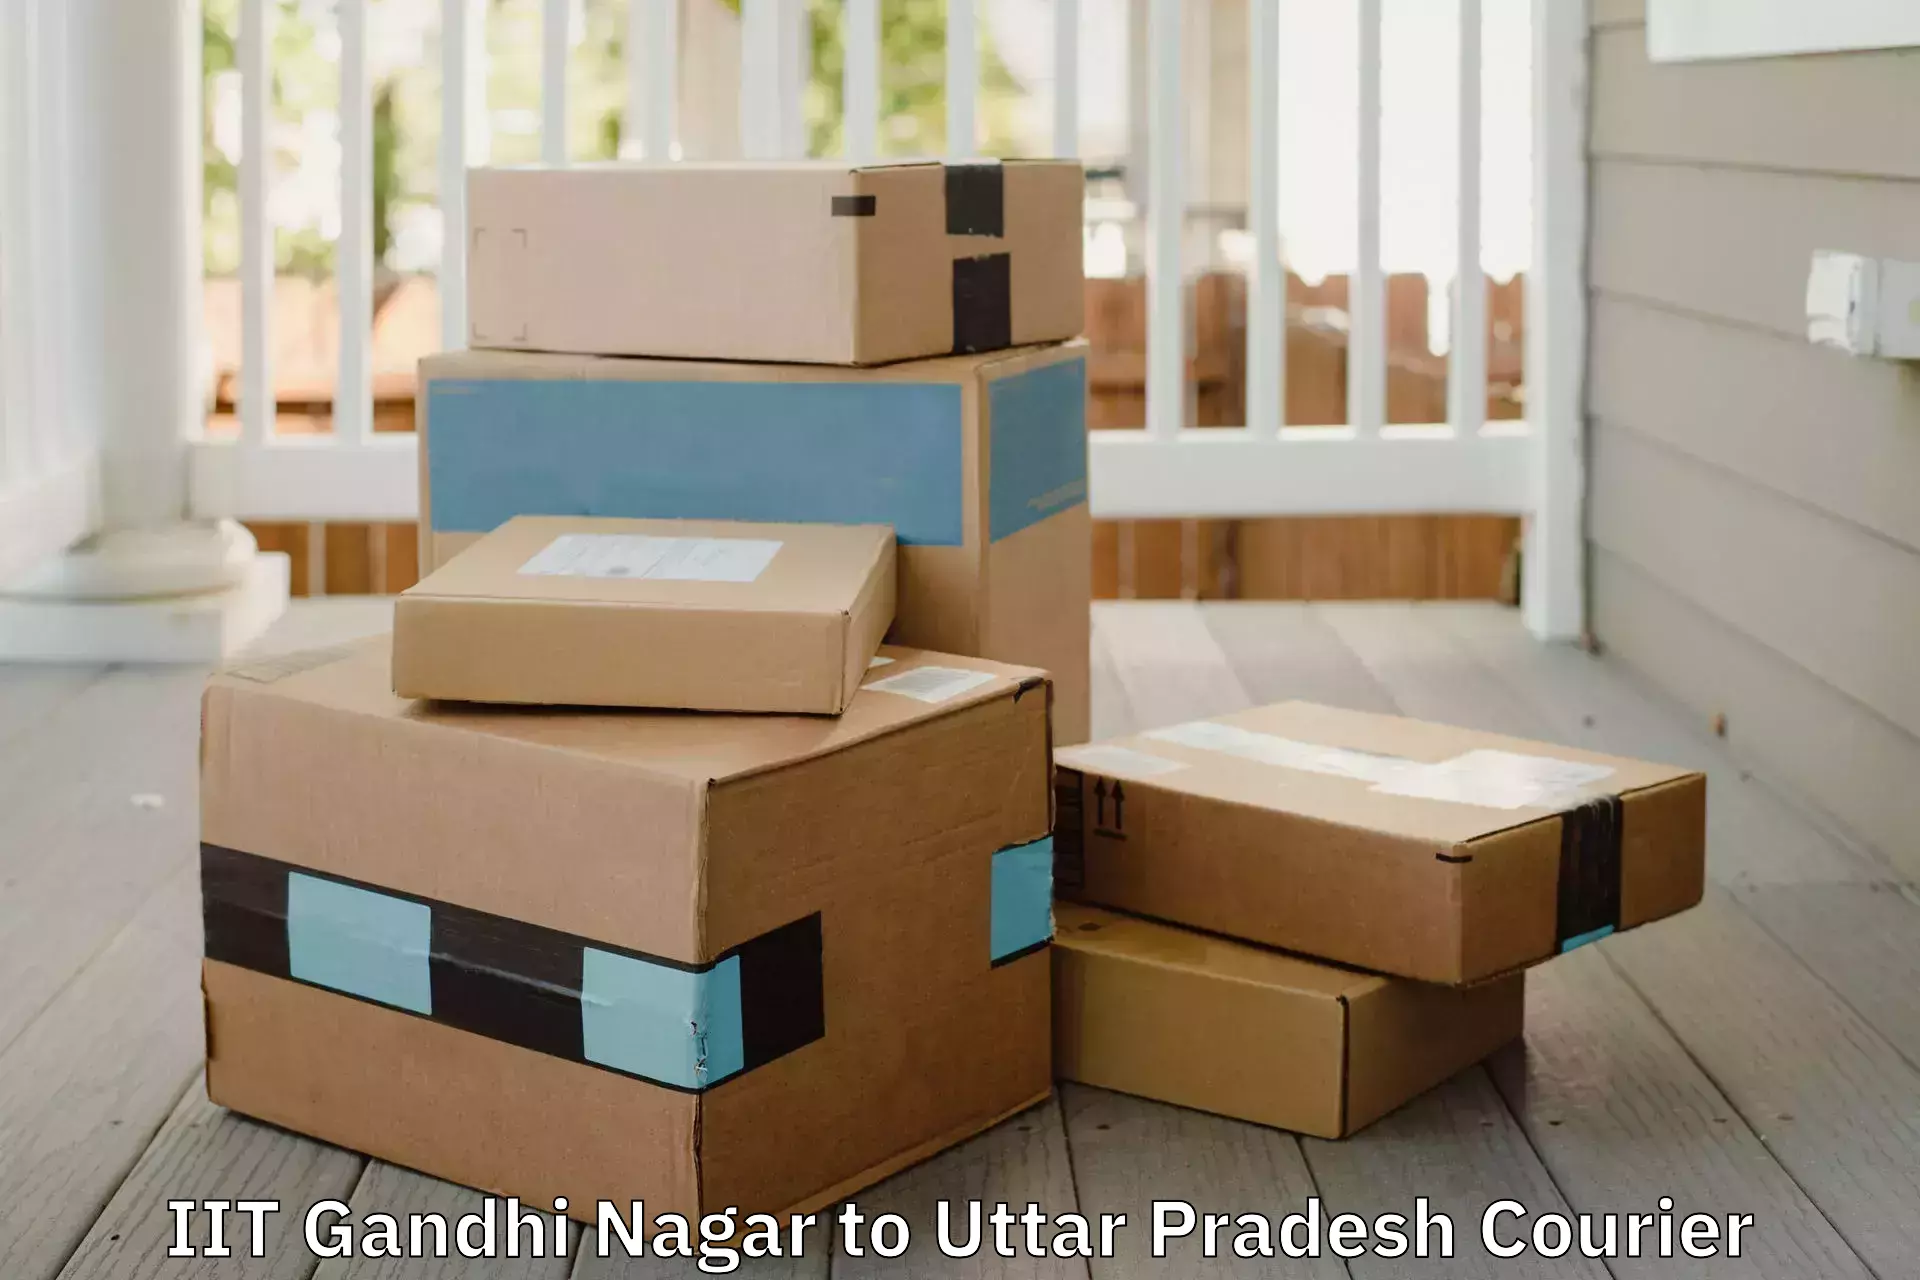 Premium moving services IIT Gandhi Nagar to Ayodhya